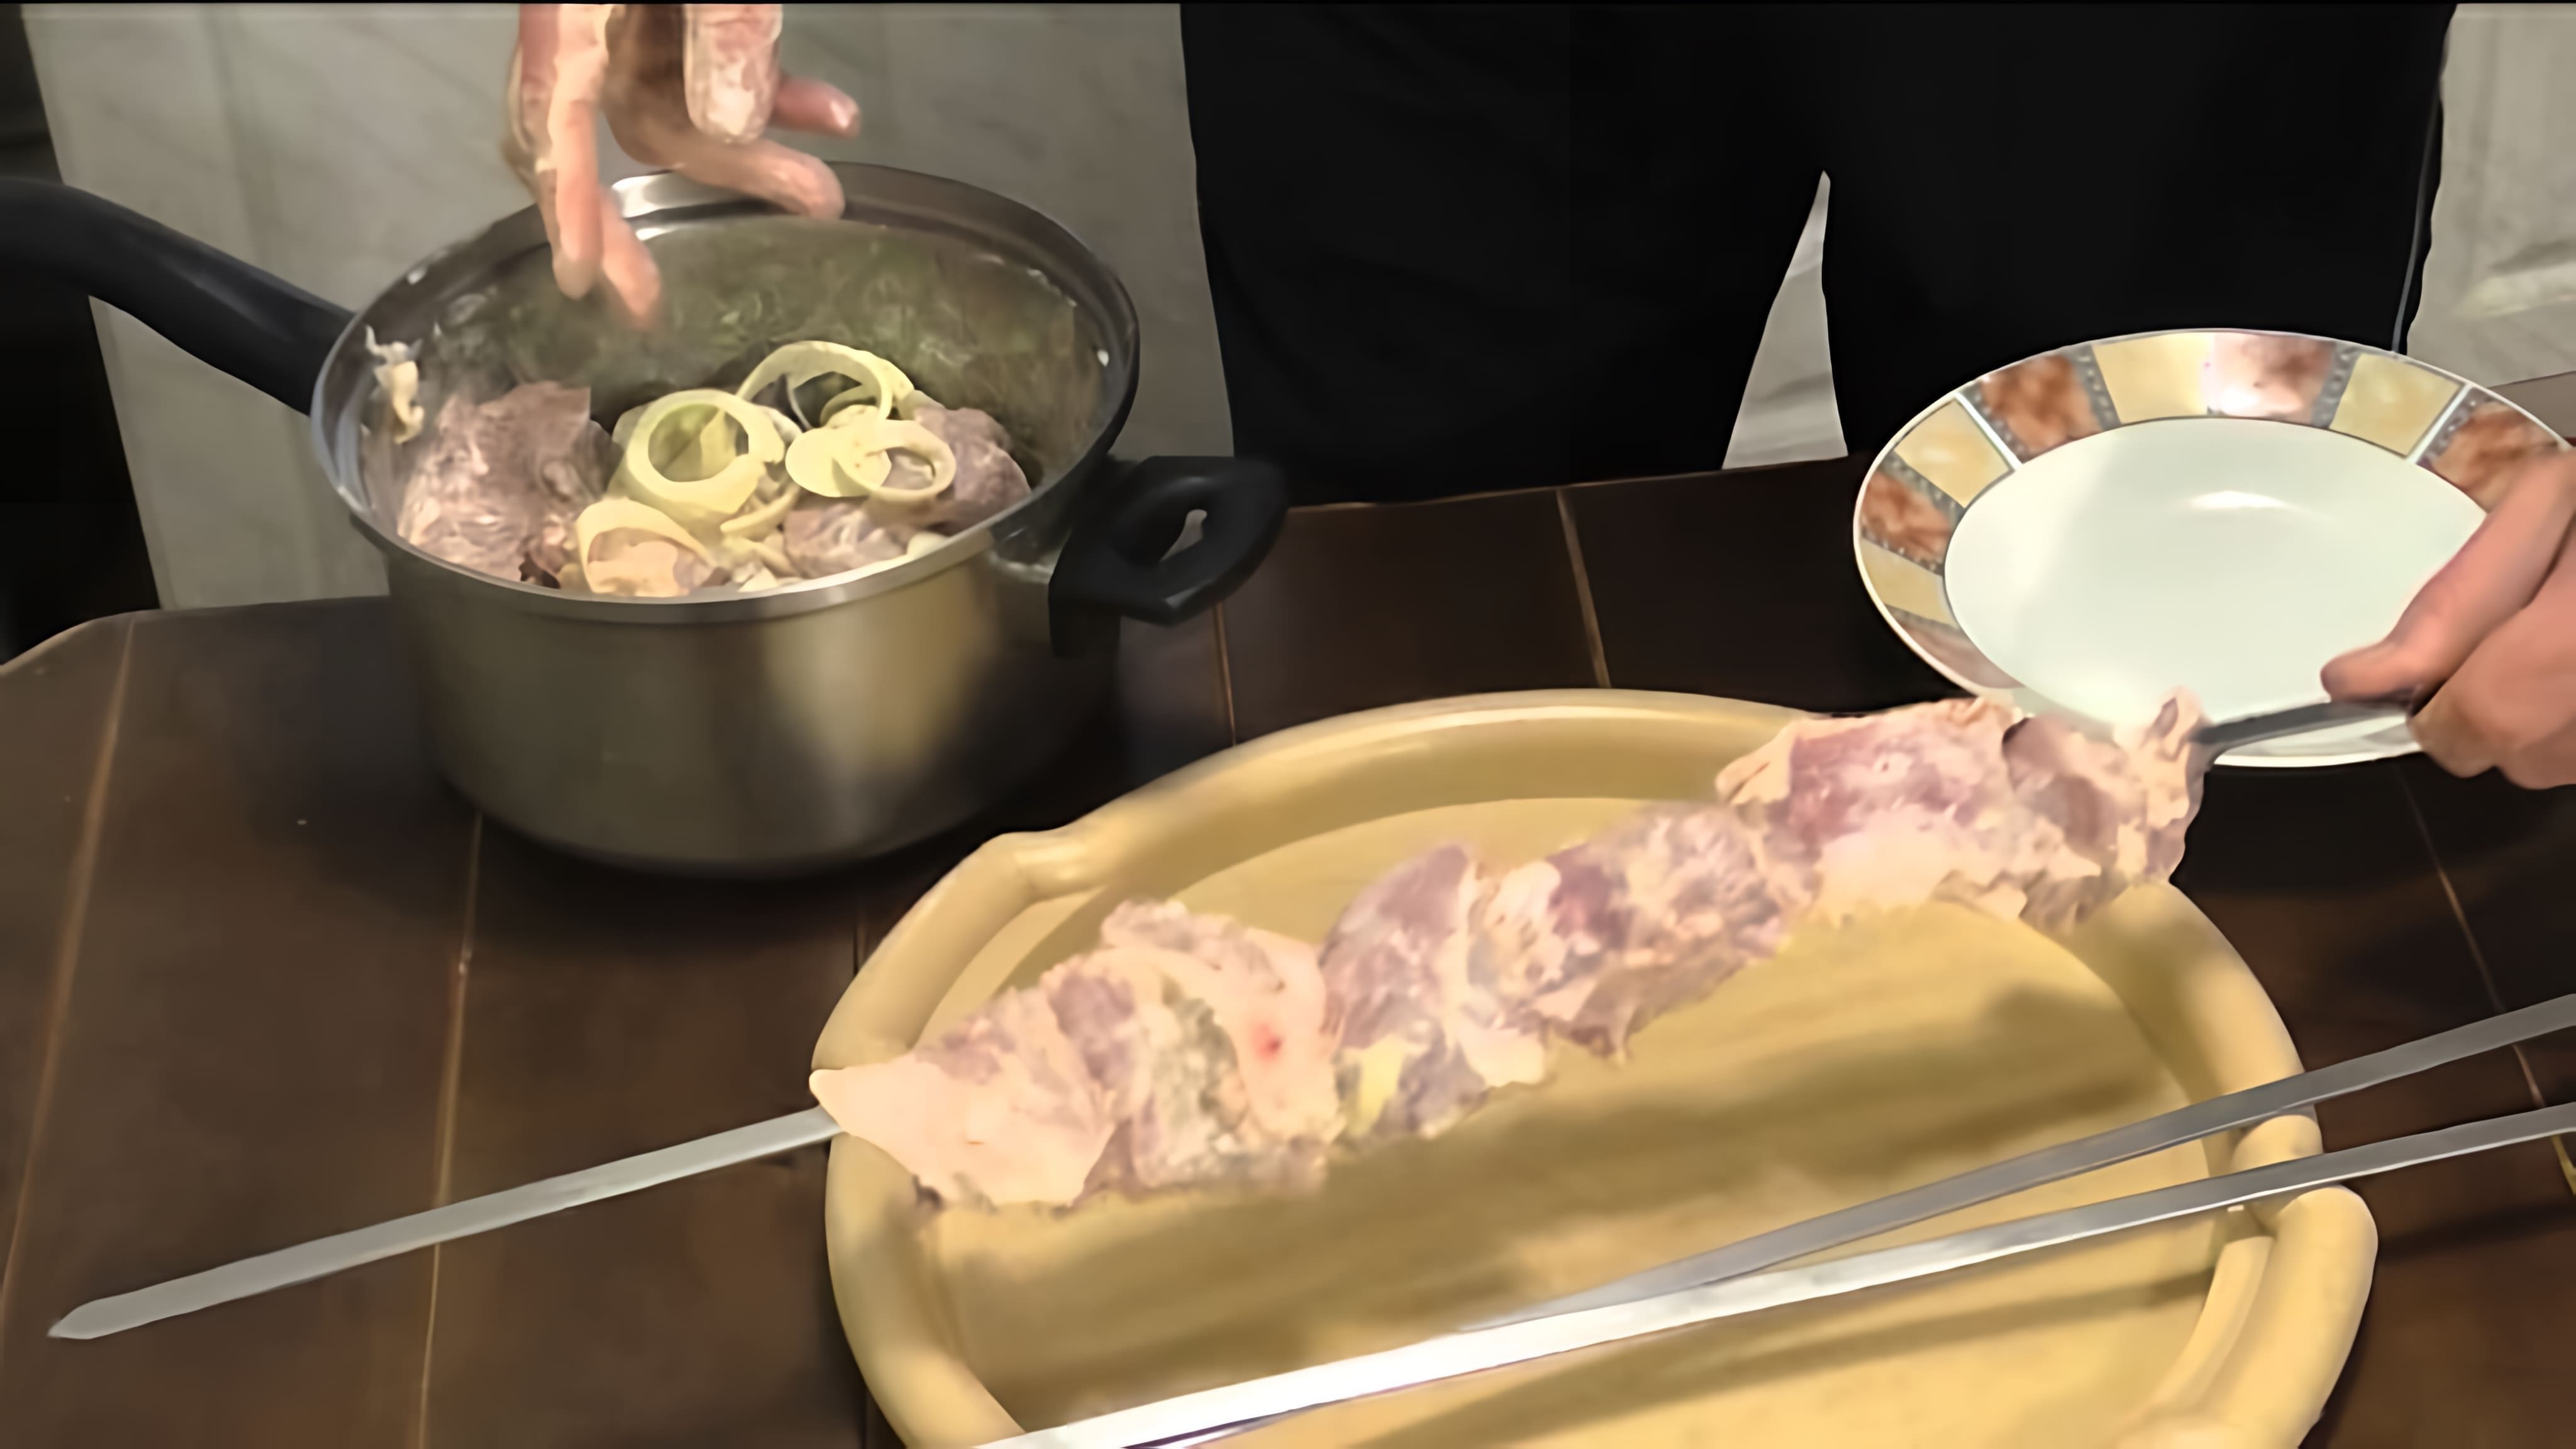 В этом видео демонстрируется процесс приготовления шашлыка